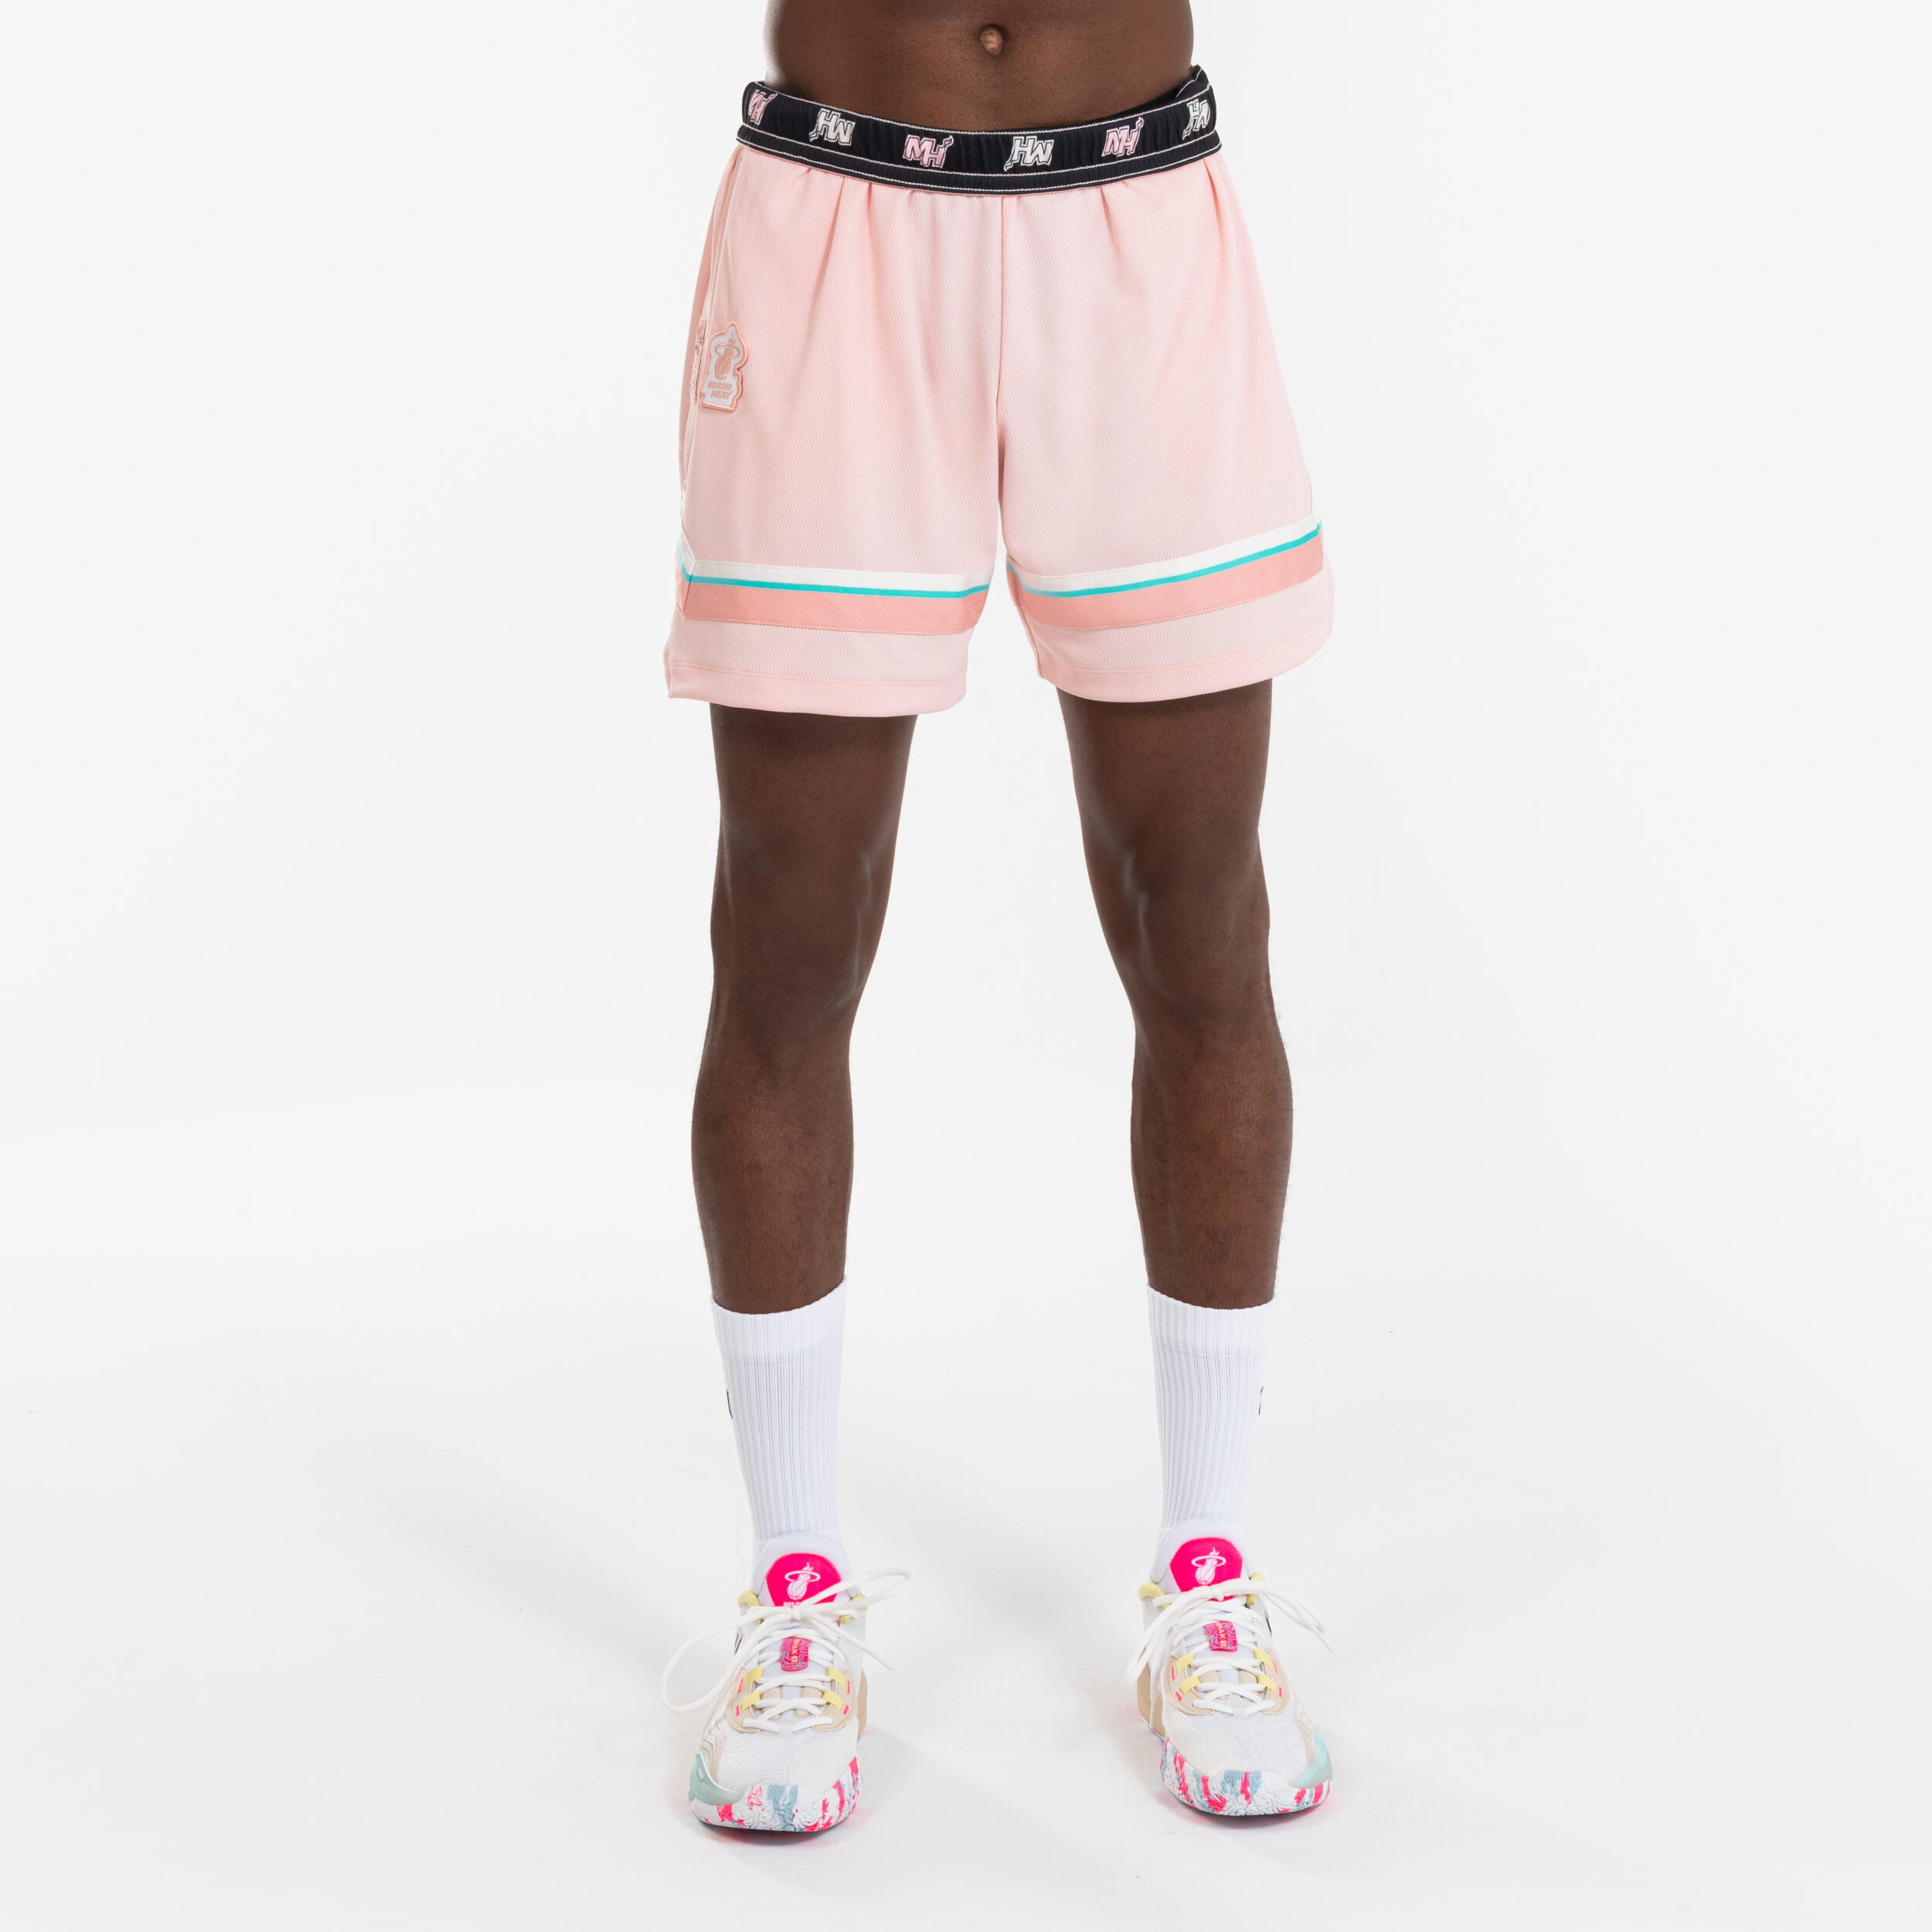 Damen/Herren Basketball Shorts NBA Miami Heat - SH 900 violett